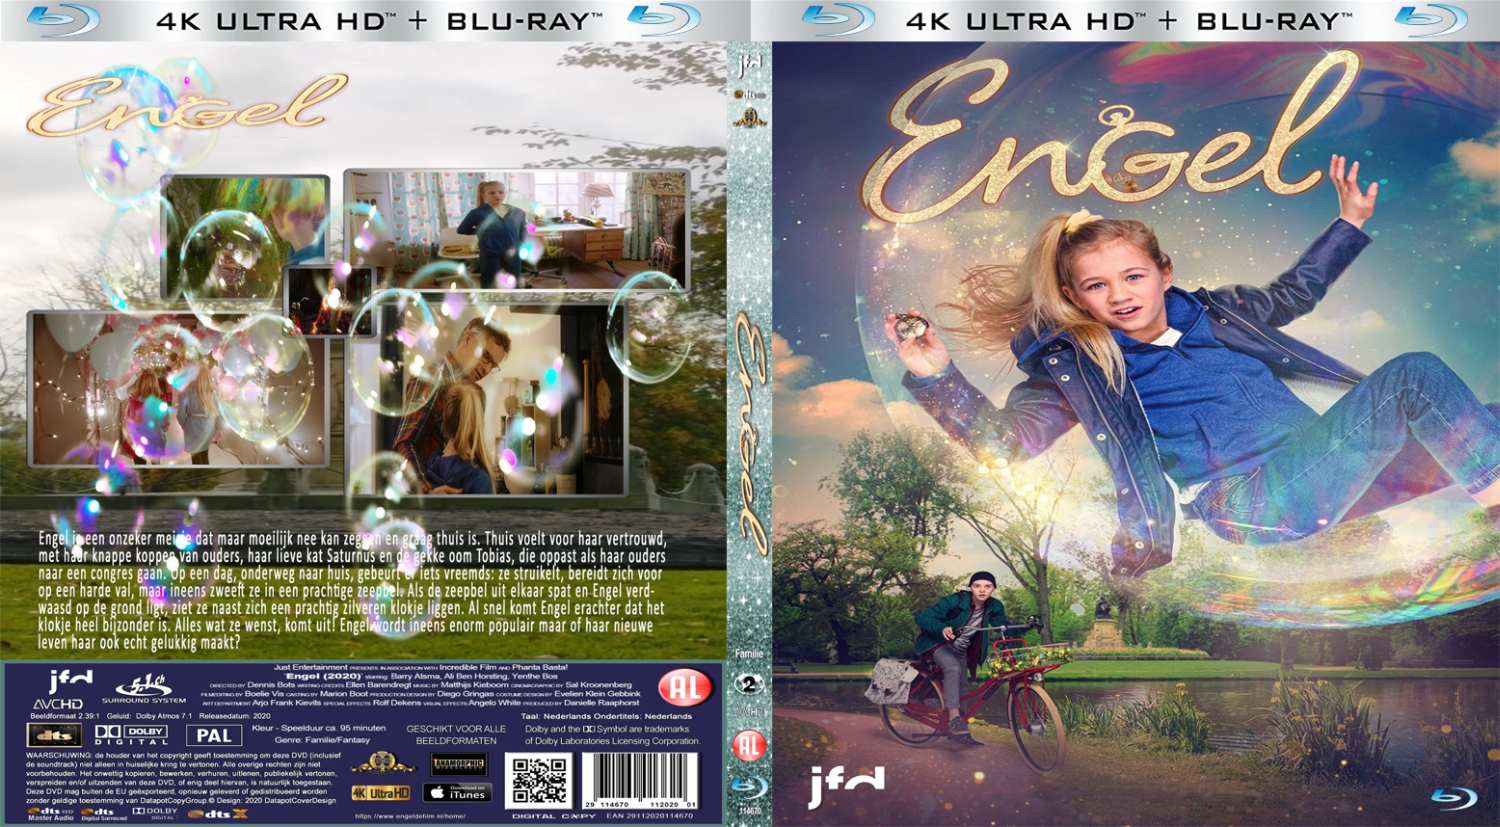 engel (2020) Blu Ray